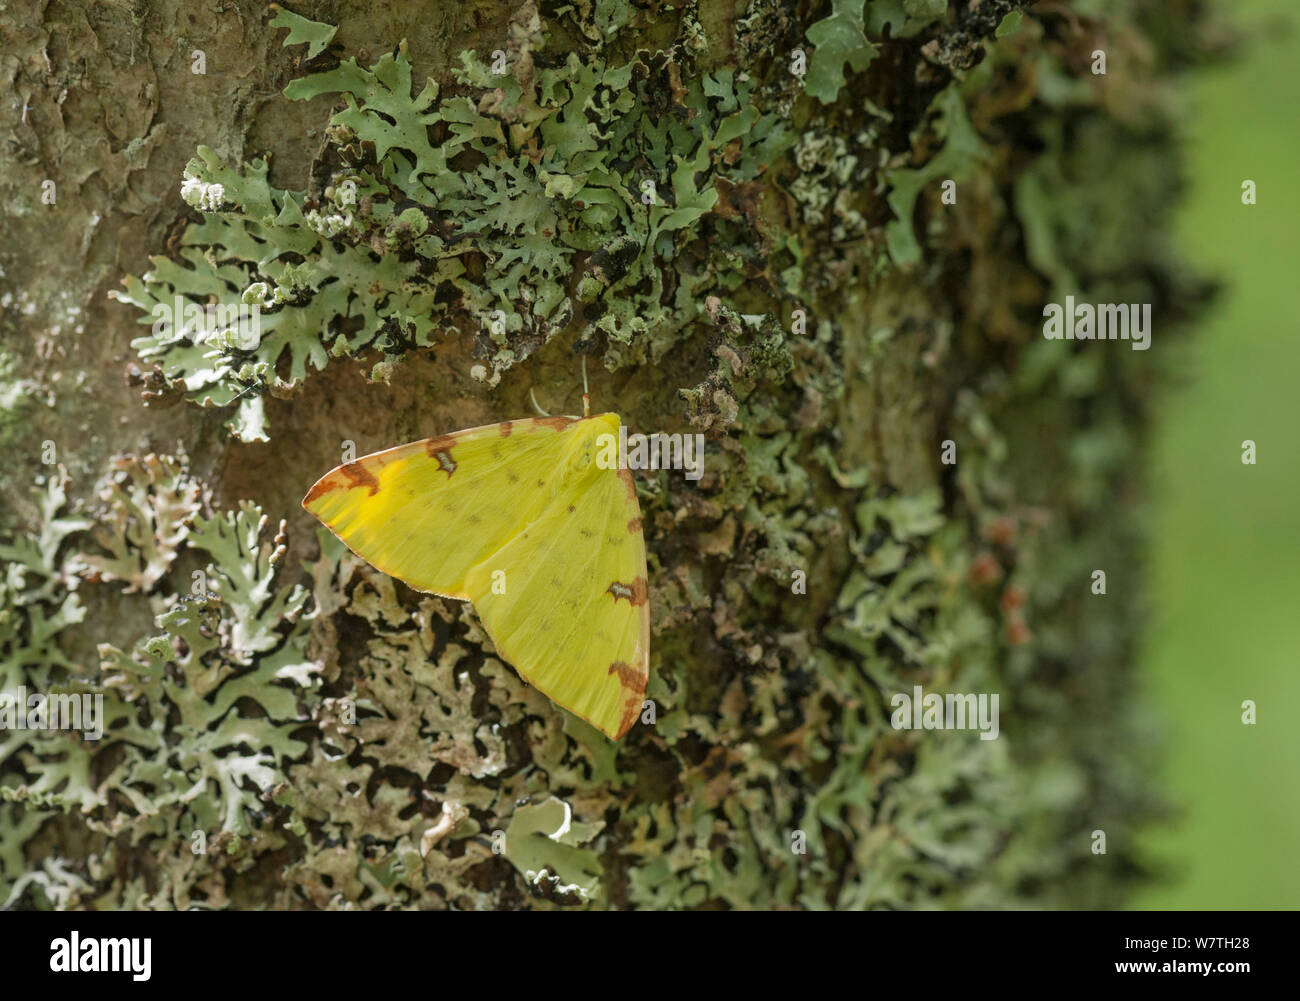 Brimstone moth (Opisthograptis luteolata) on lichen, central Finland, June. Stock Photo